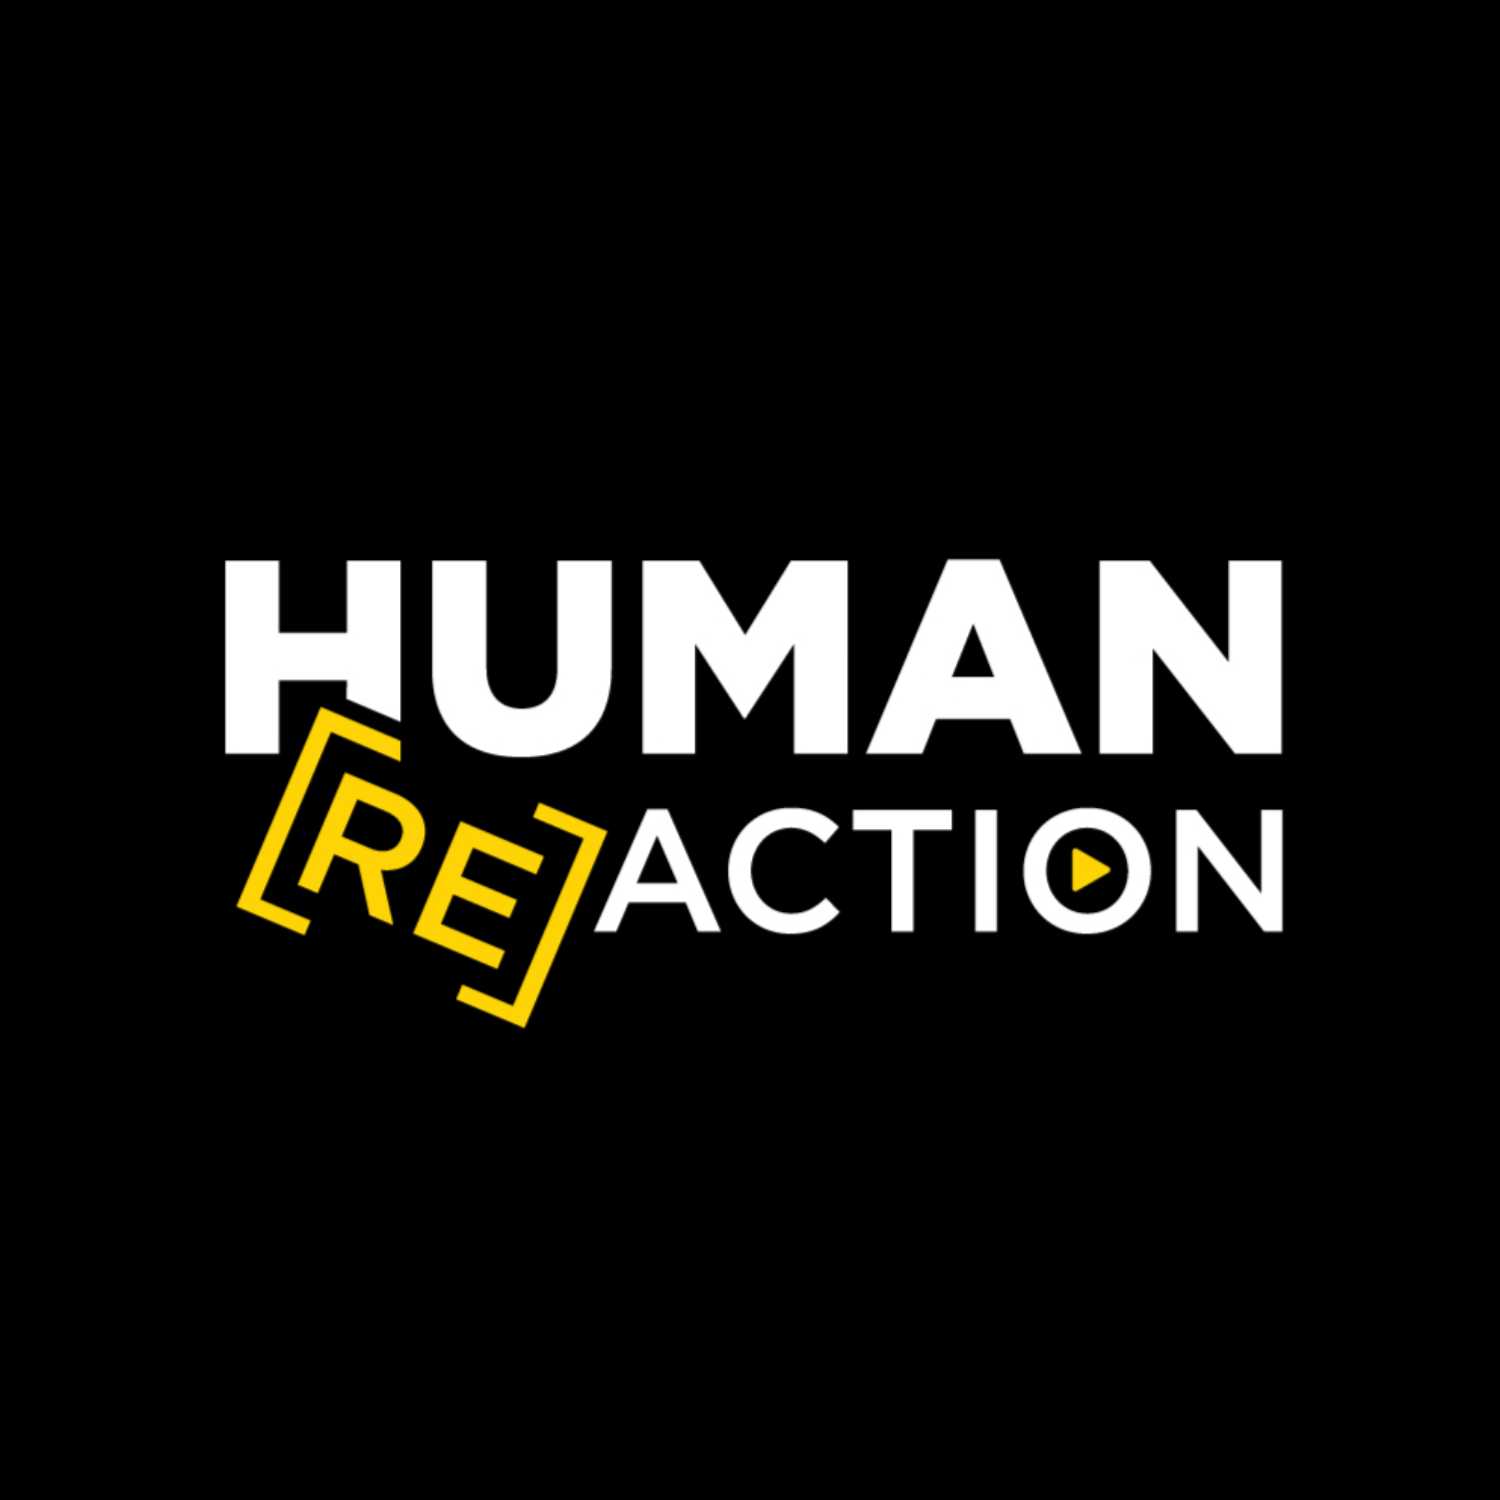 Human ReAction